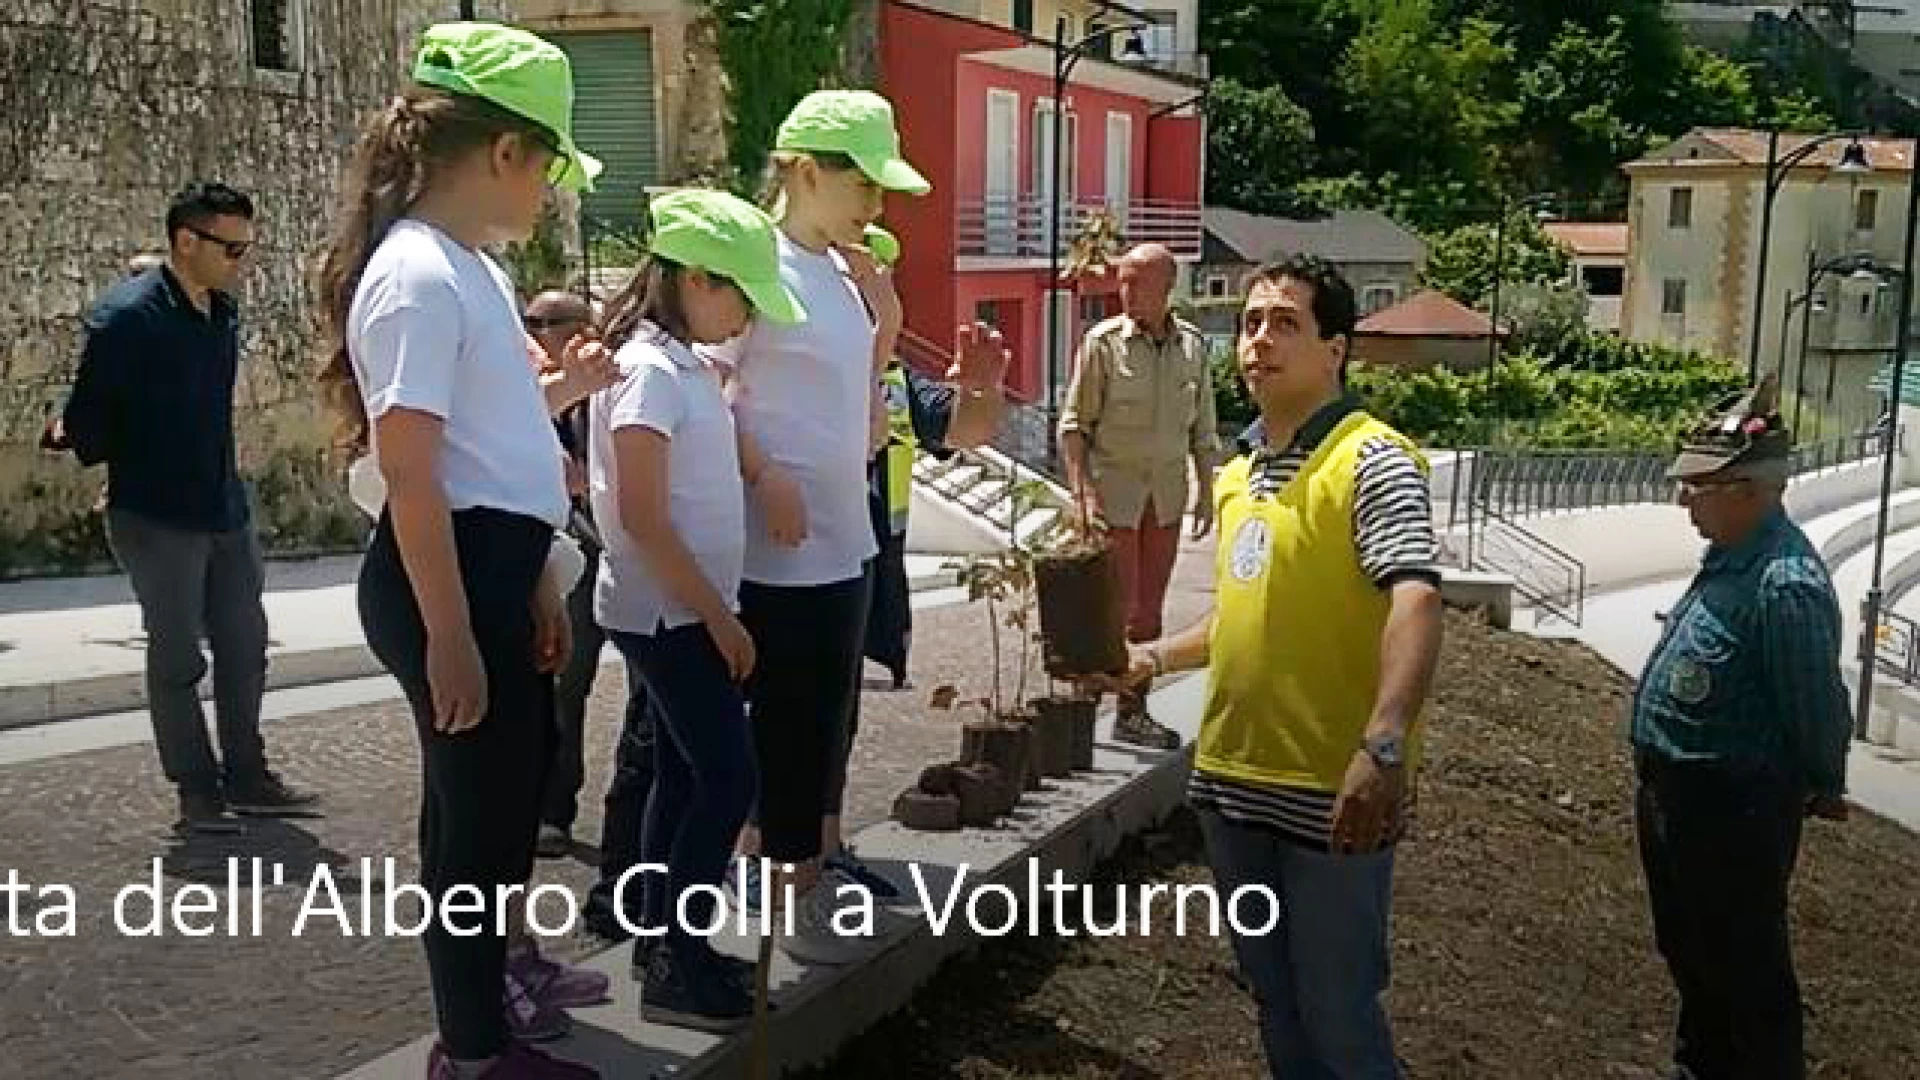 Colli a Volturno: domani appuntamento con l’edizione 2019 della Festa dell’Albero. Protagonisti saranno gli alunni della Scuola Primaria.